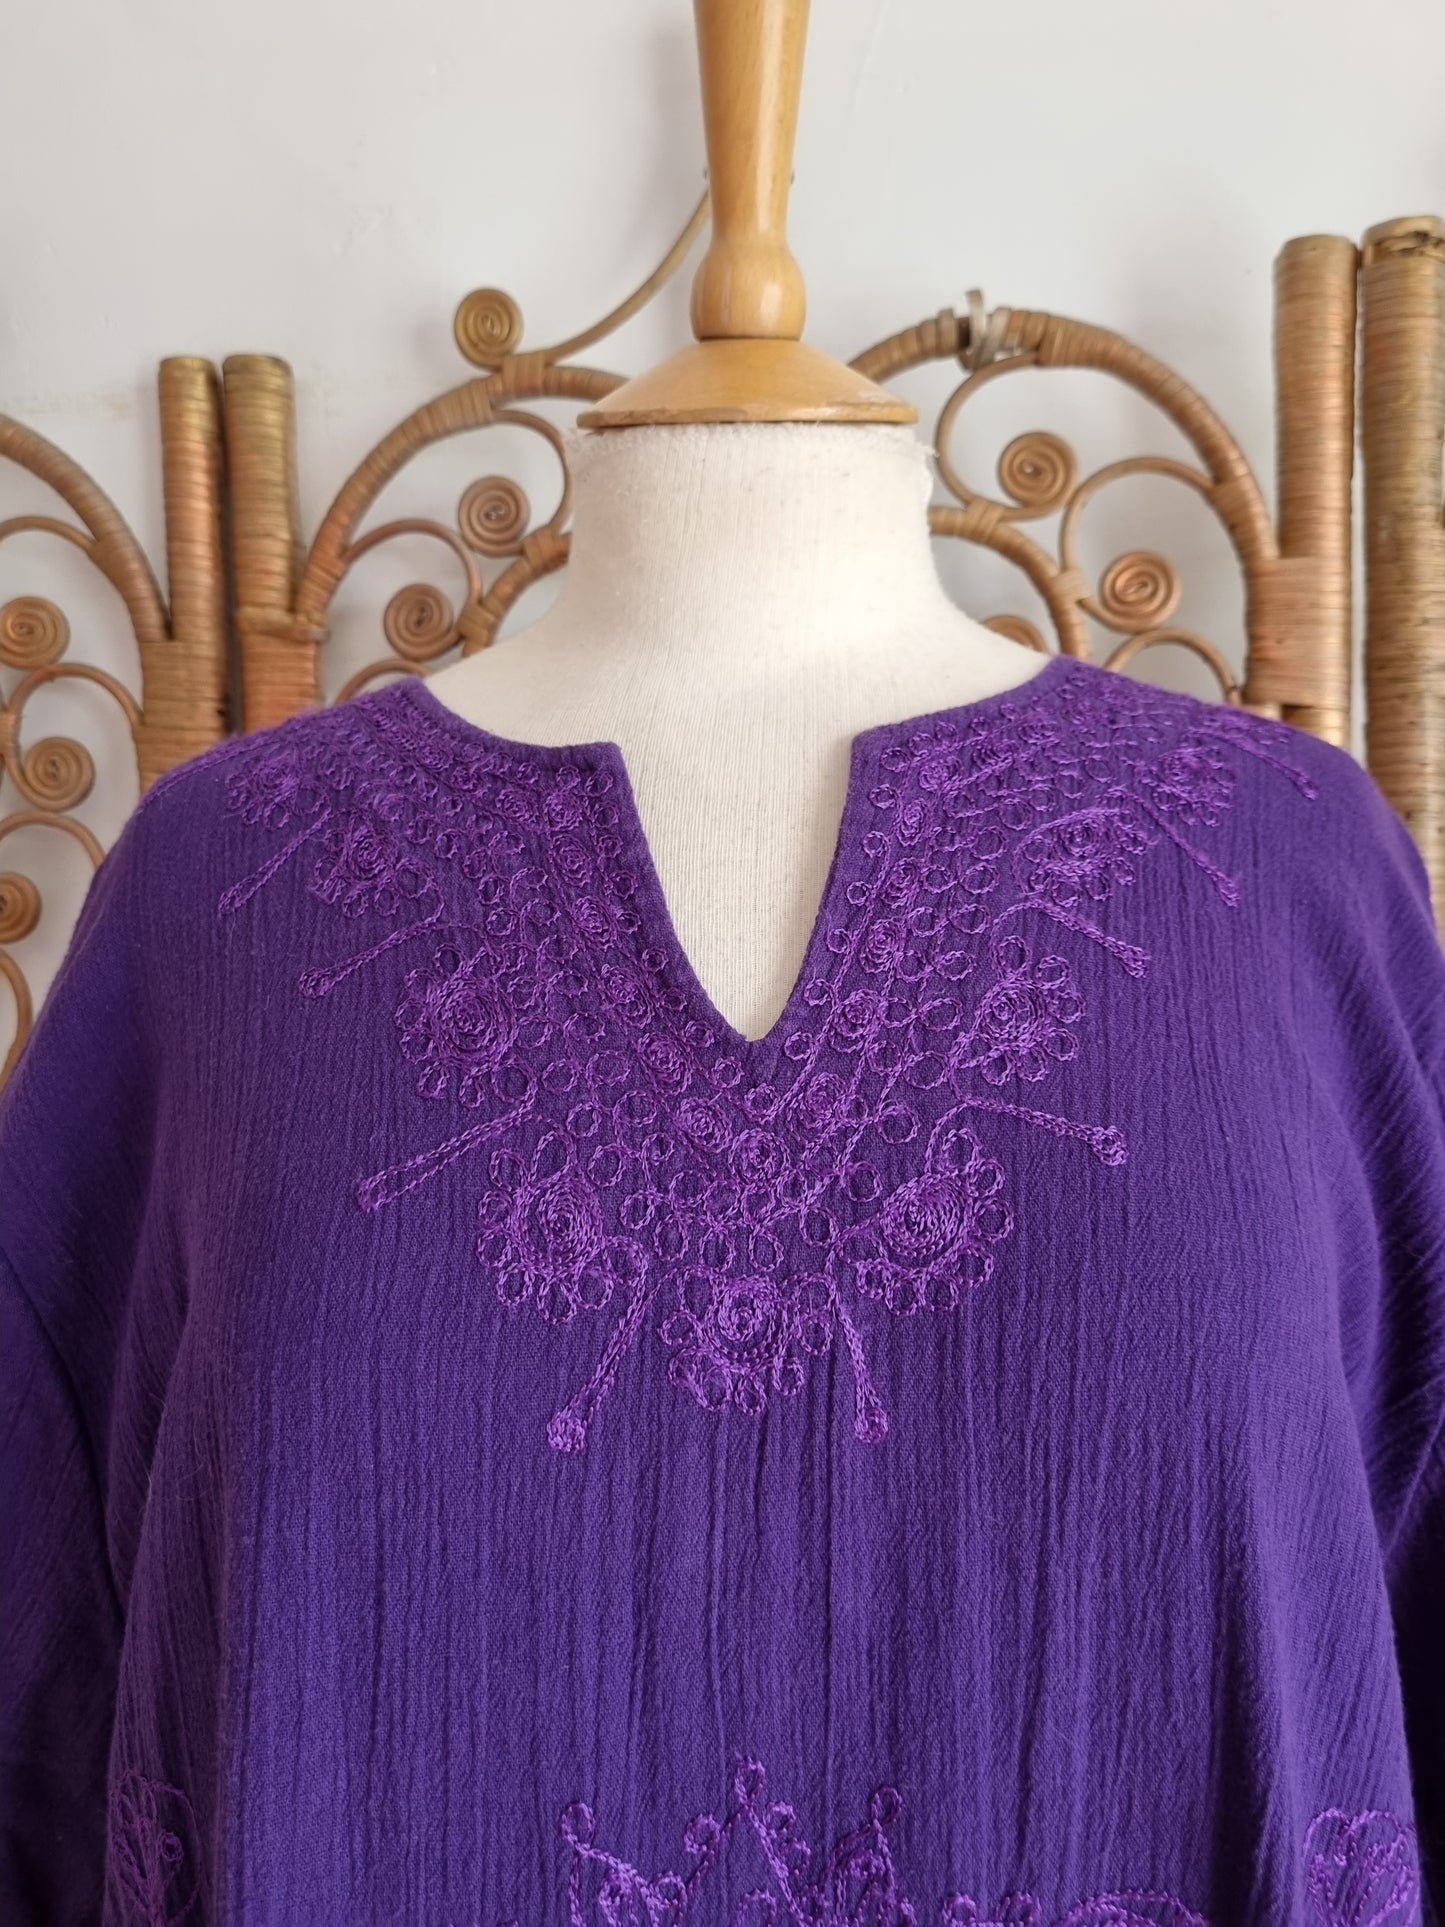 Vintage style embroidered kaftan dress